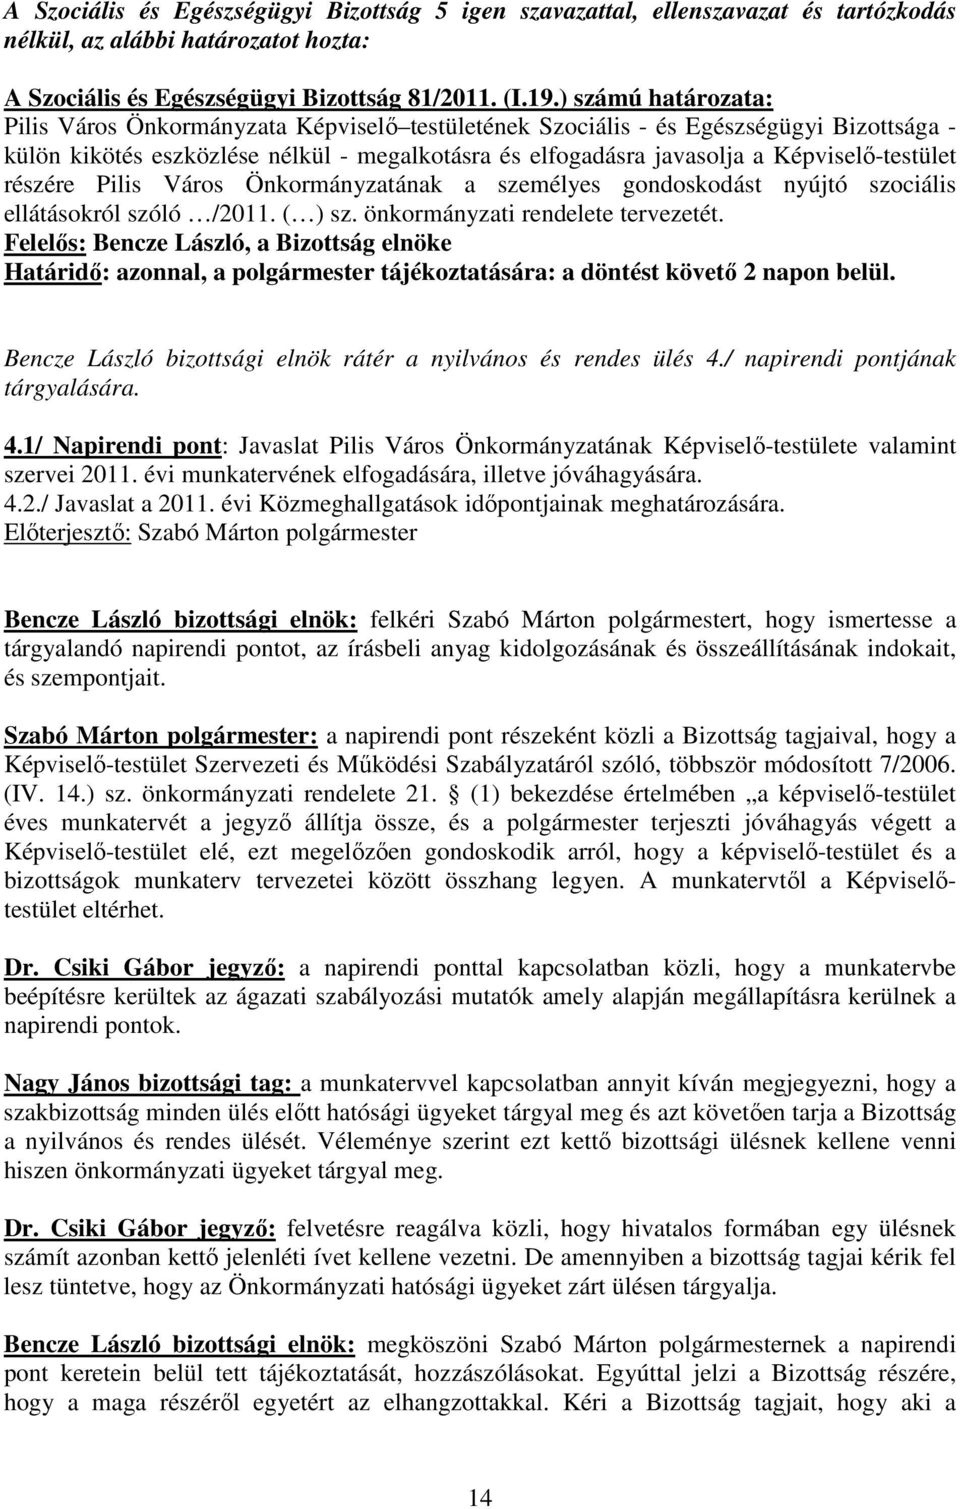 Képviselı-testület részére Pilis Város Önkormányzatának a személyes gondoskodást nyújtó szociális ellátásokról szóló /2011. ( ) sz. önkormányzati rendelete tervezetét.